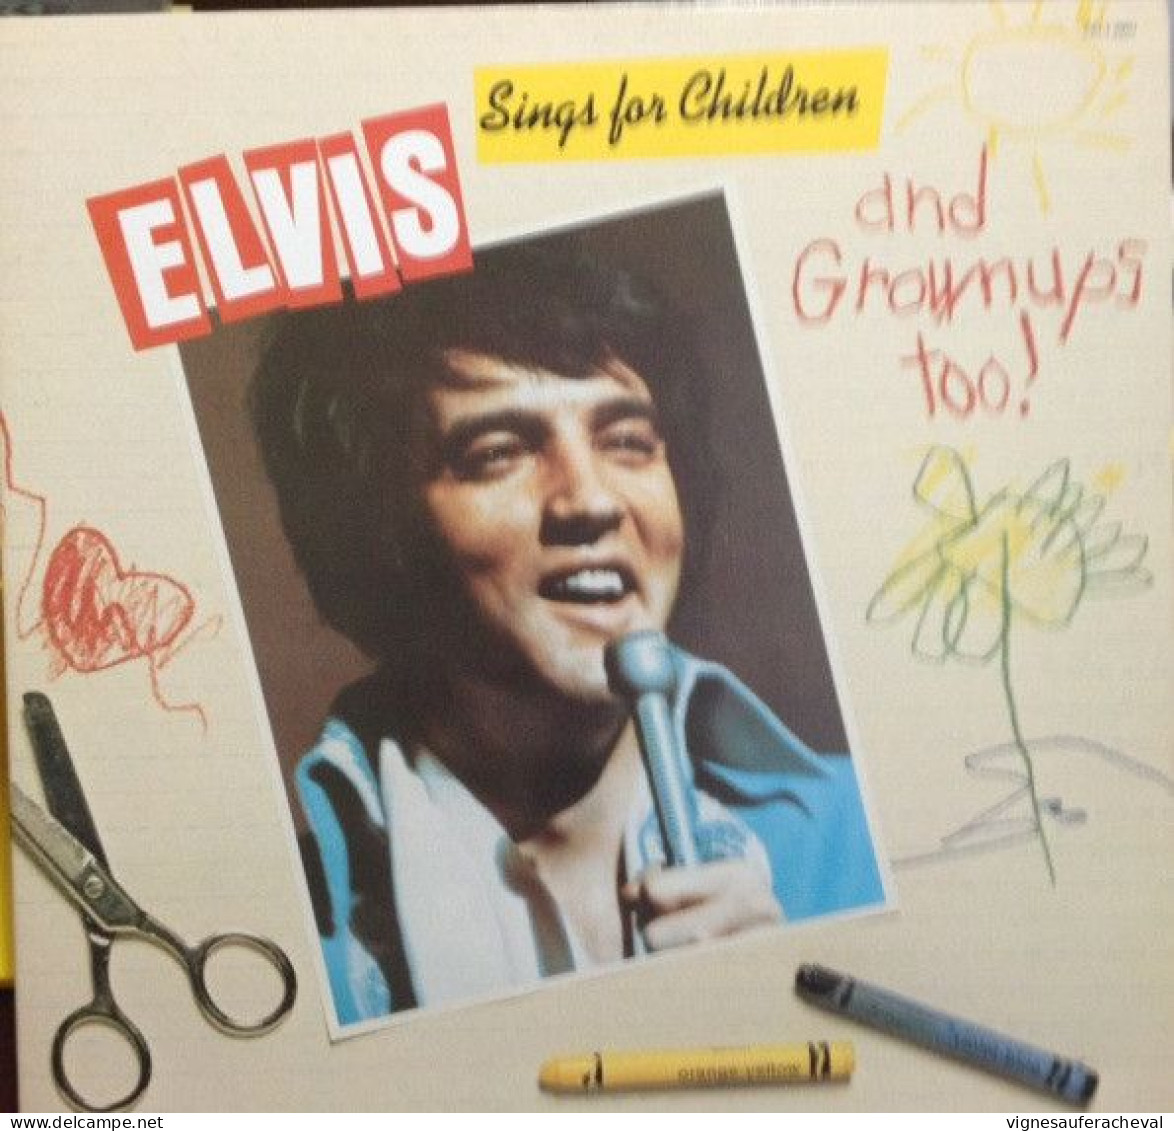 Elvis Presley - Elvis Sings For Children And Grownups Too!! - Altri - Inglese